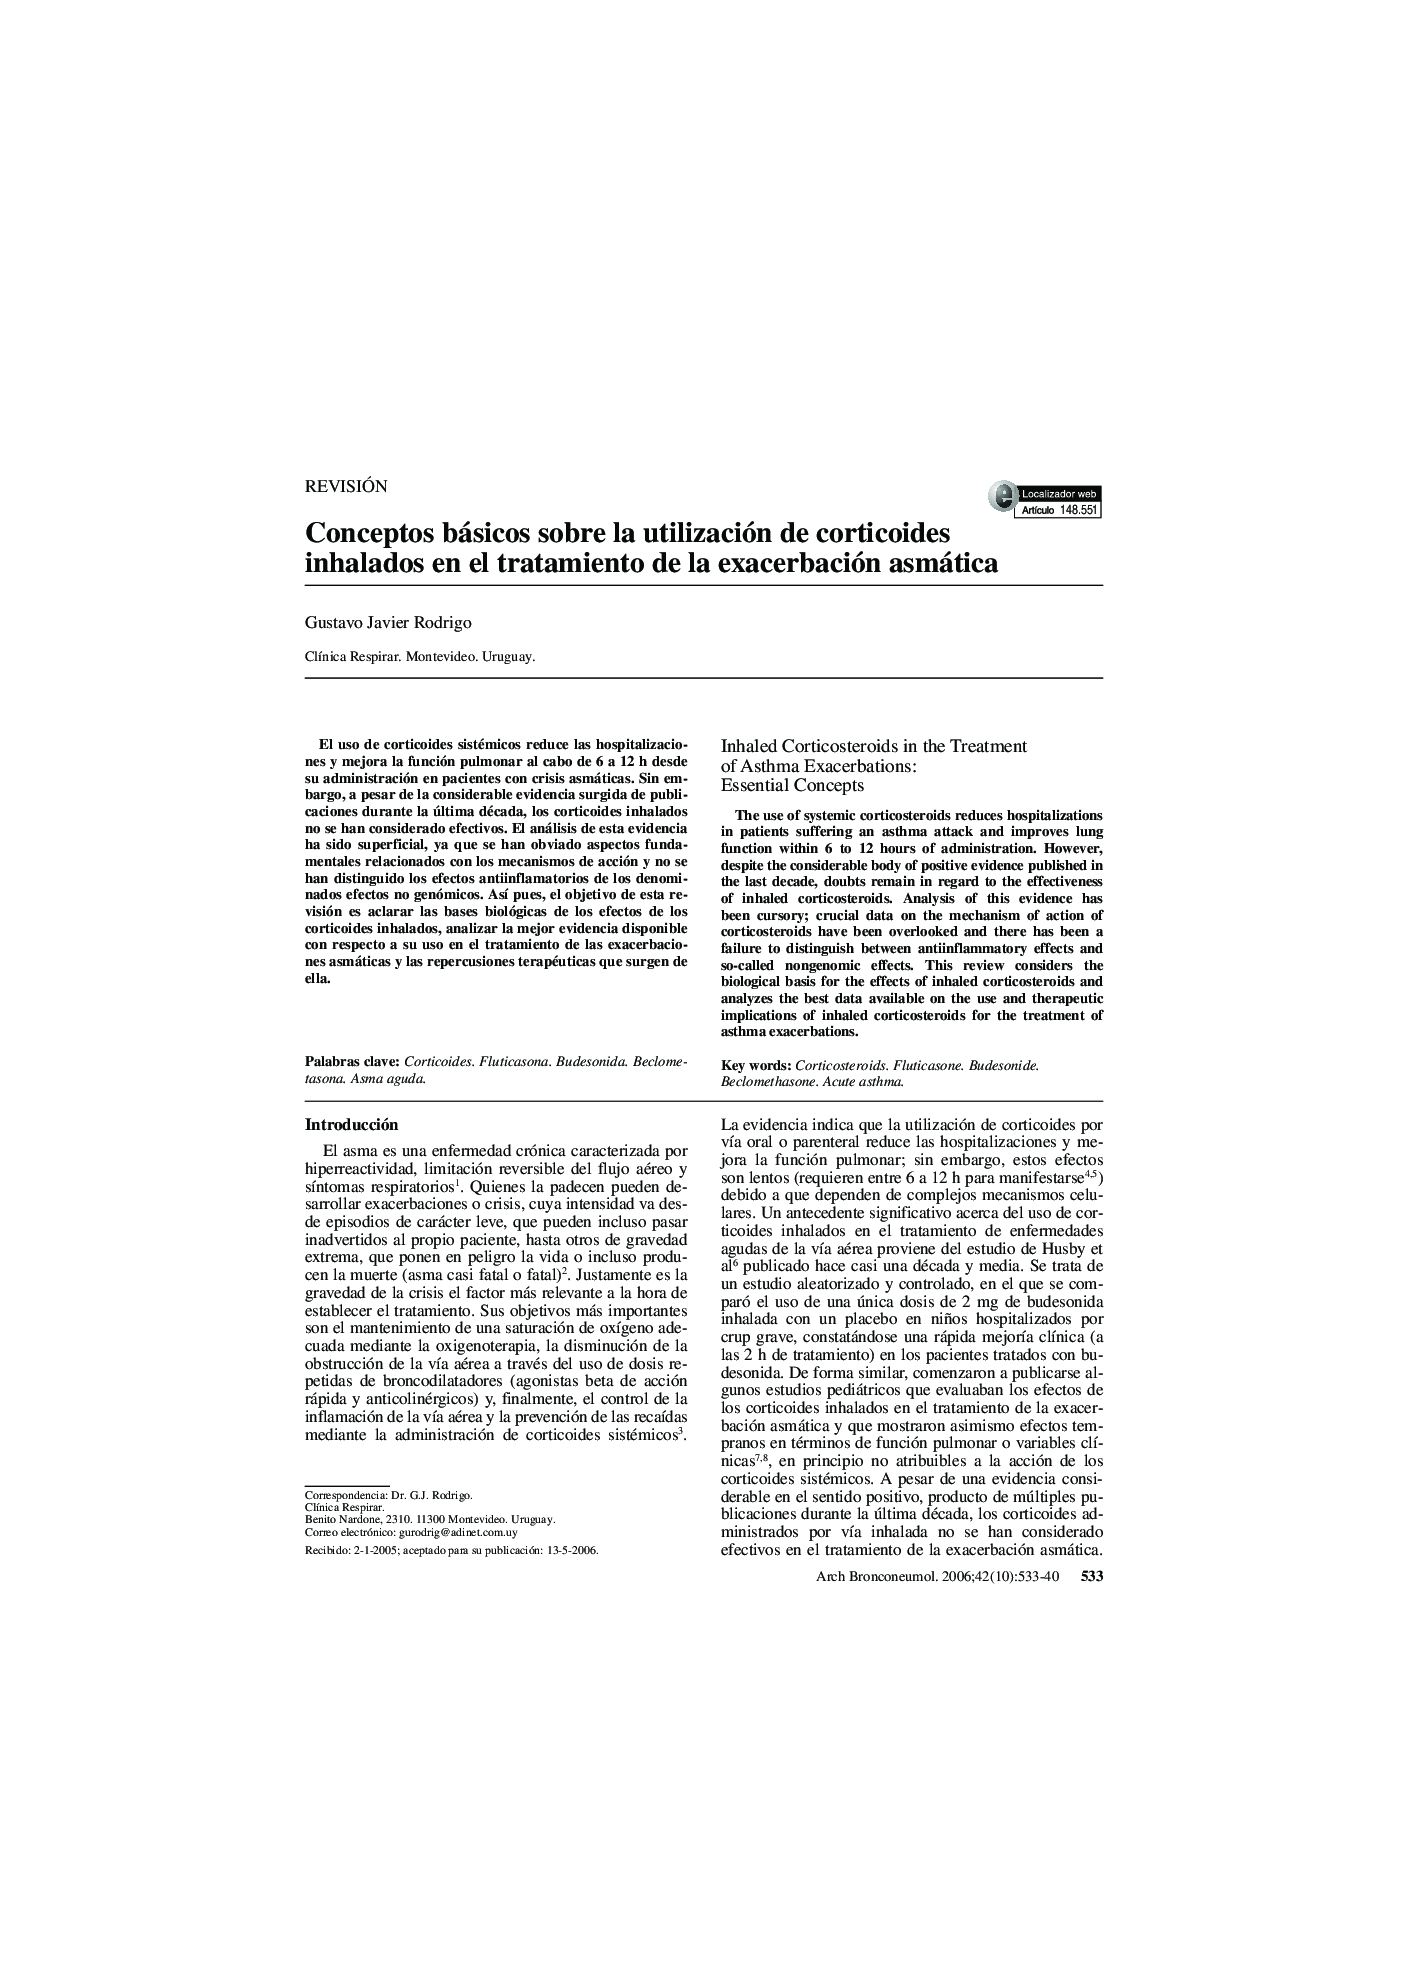 Conceptos básicos sobre la utilización de corticoides inhalados en el tratamiento de la exacerbación asmática